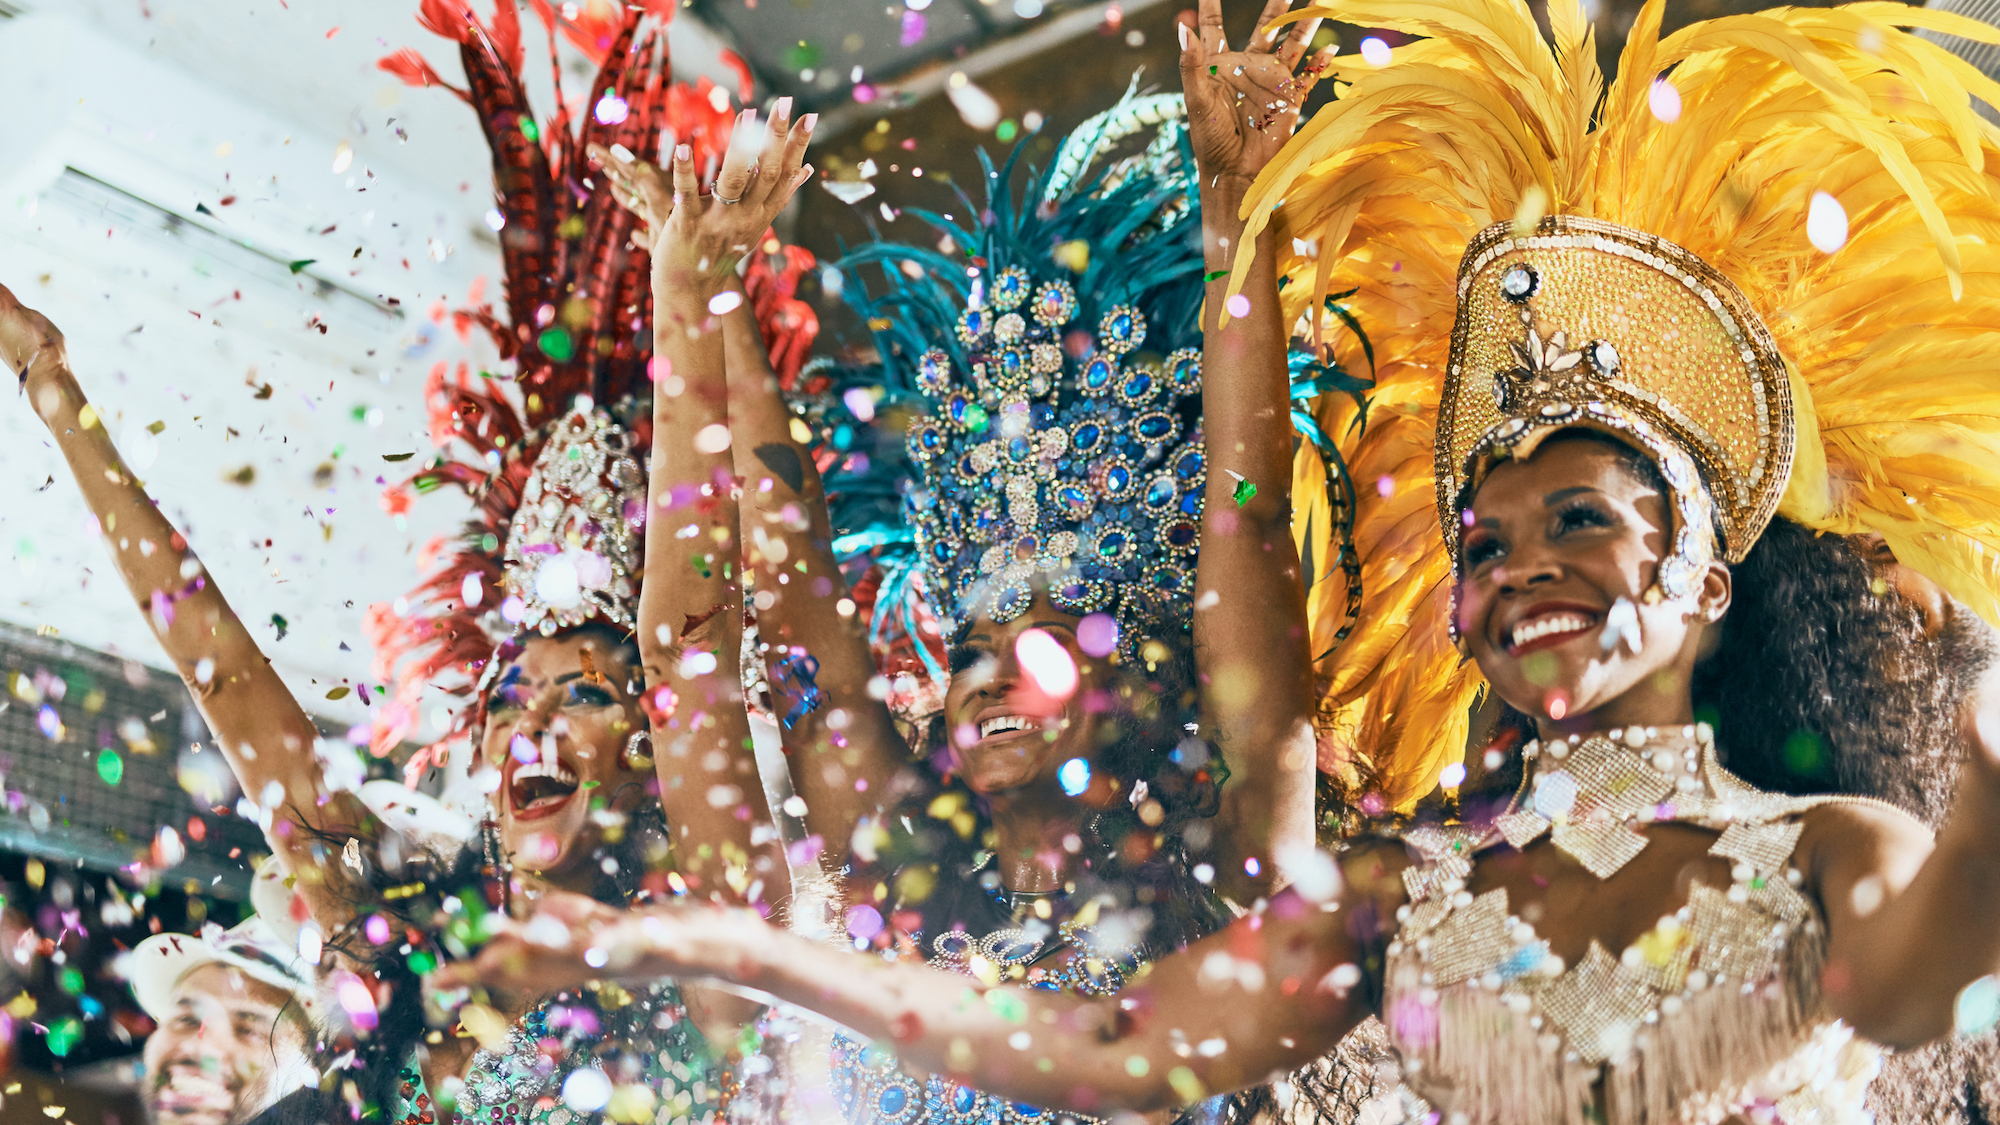 Première nuit de carnaval à Rio après deux ans de crise sanitaire